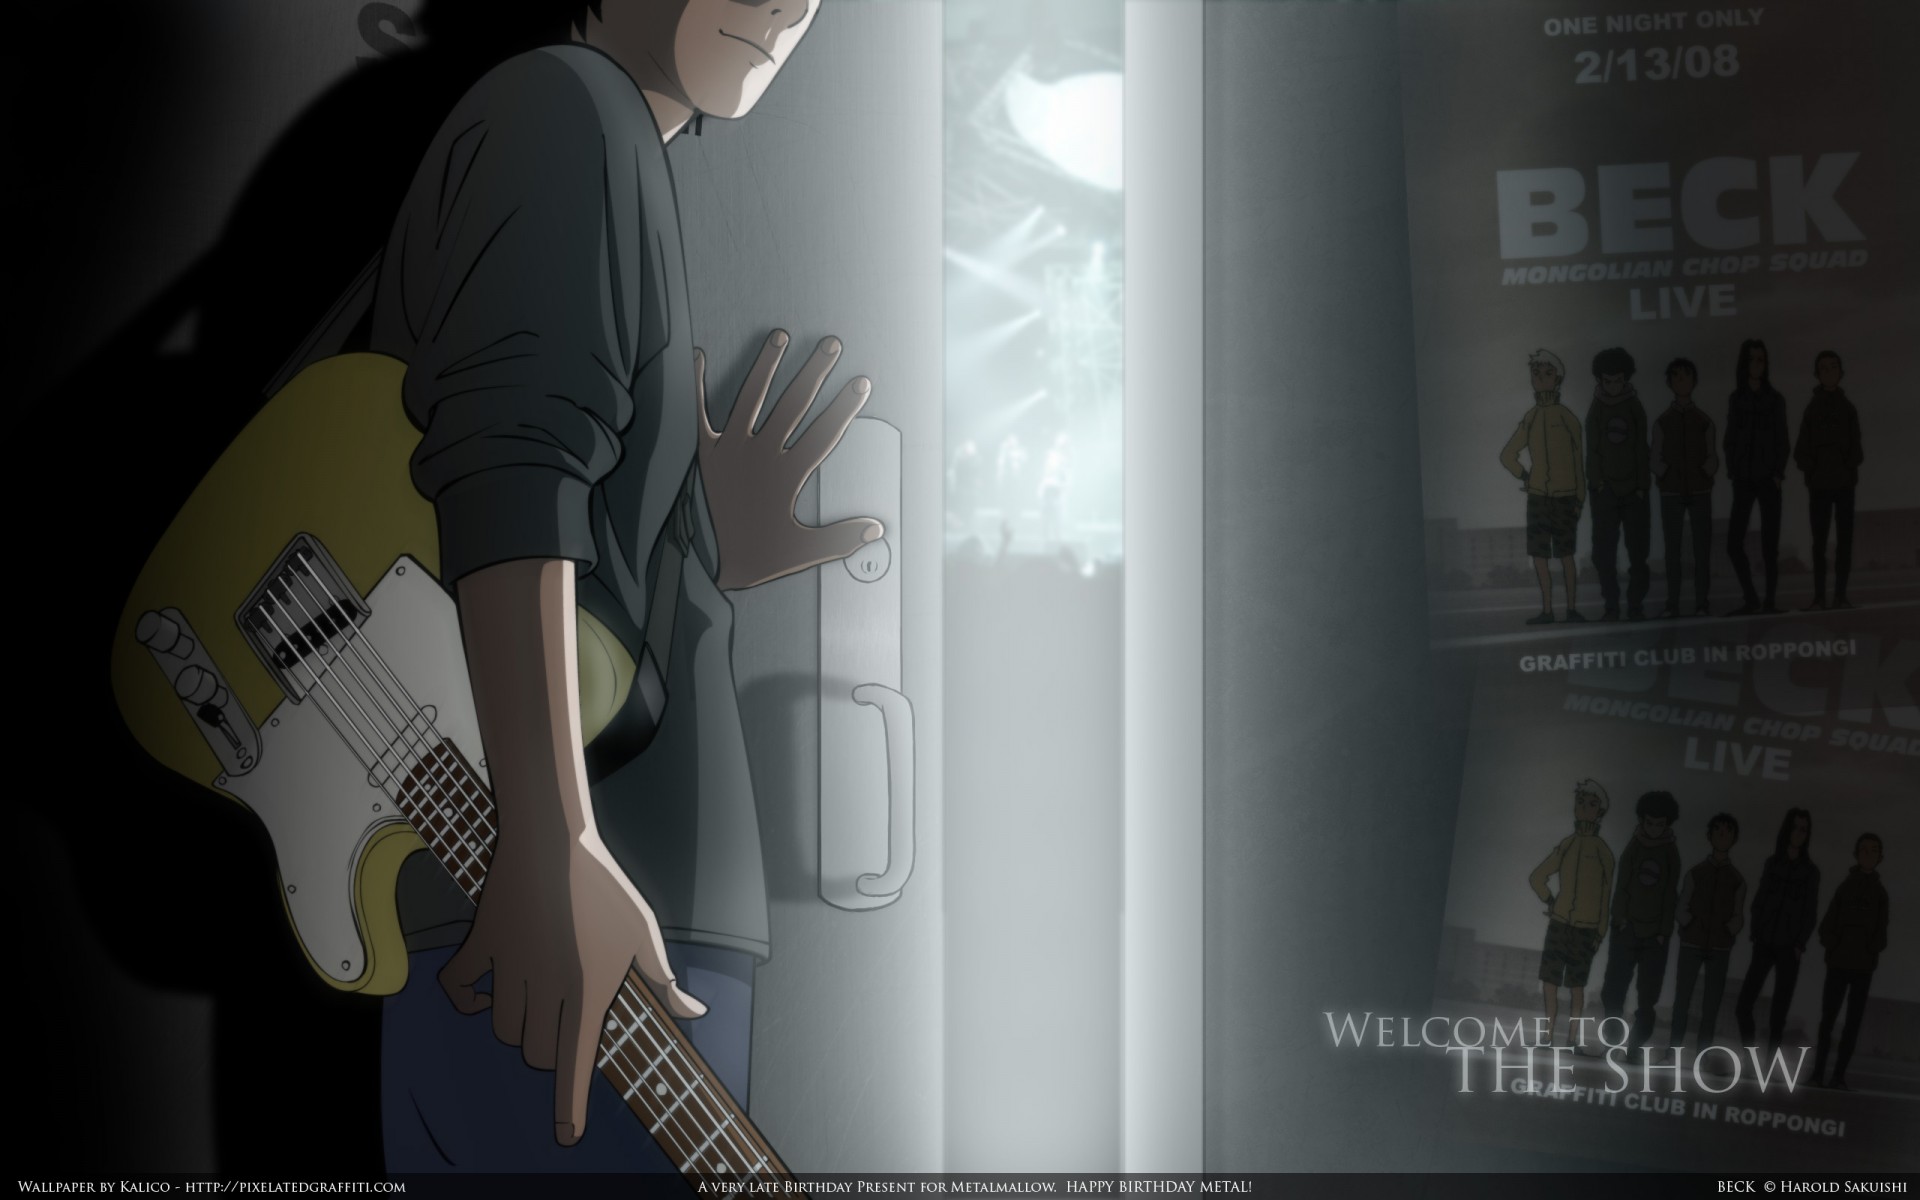 Beck, Beck Mongolian Chop Squad, anime - desktop wallpaper